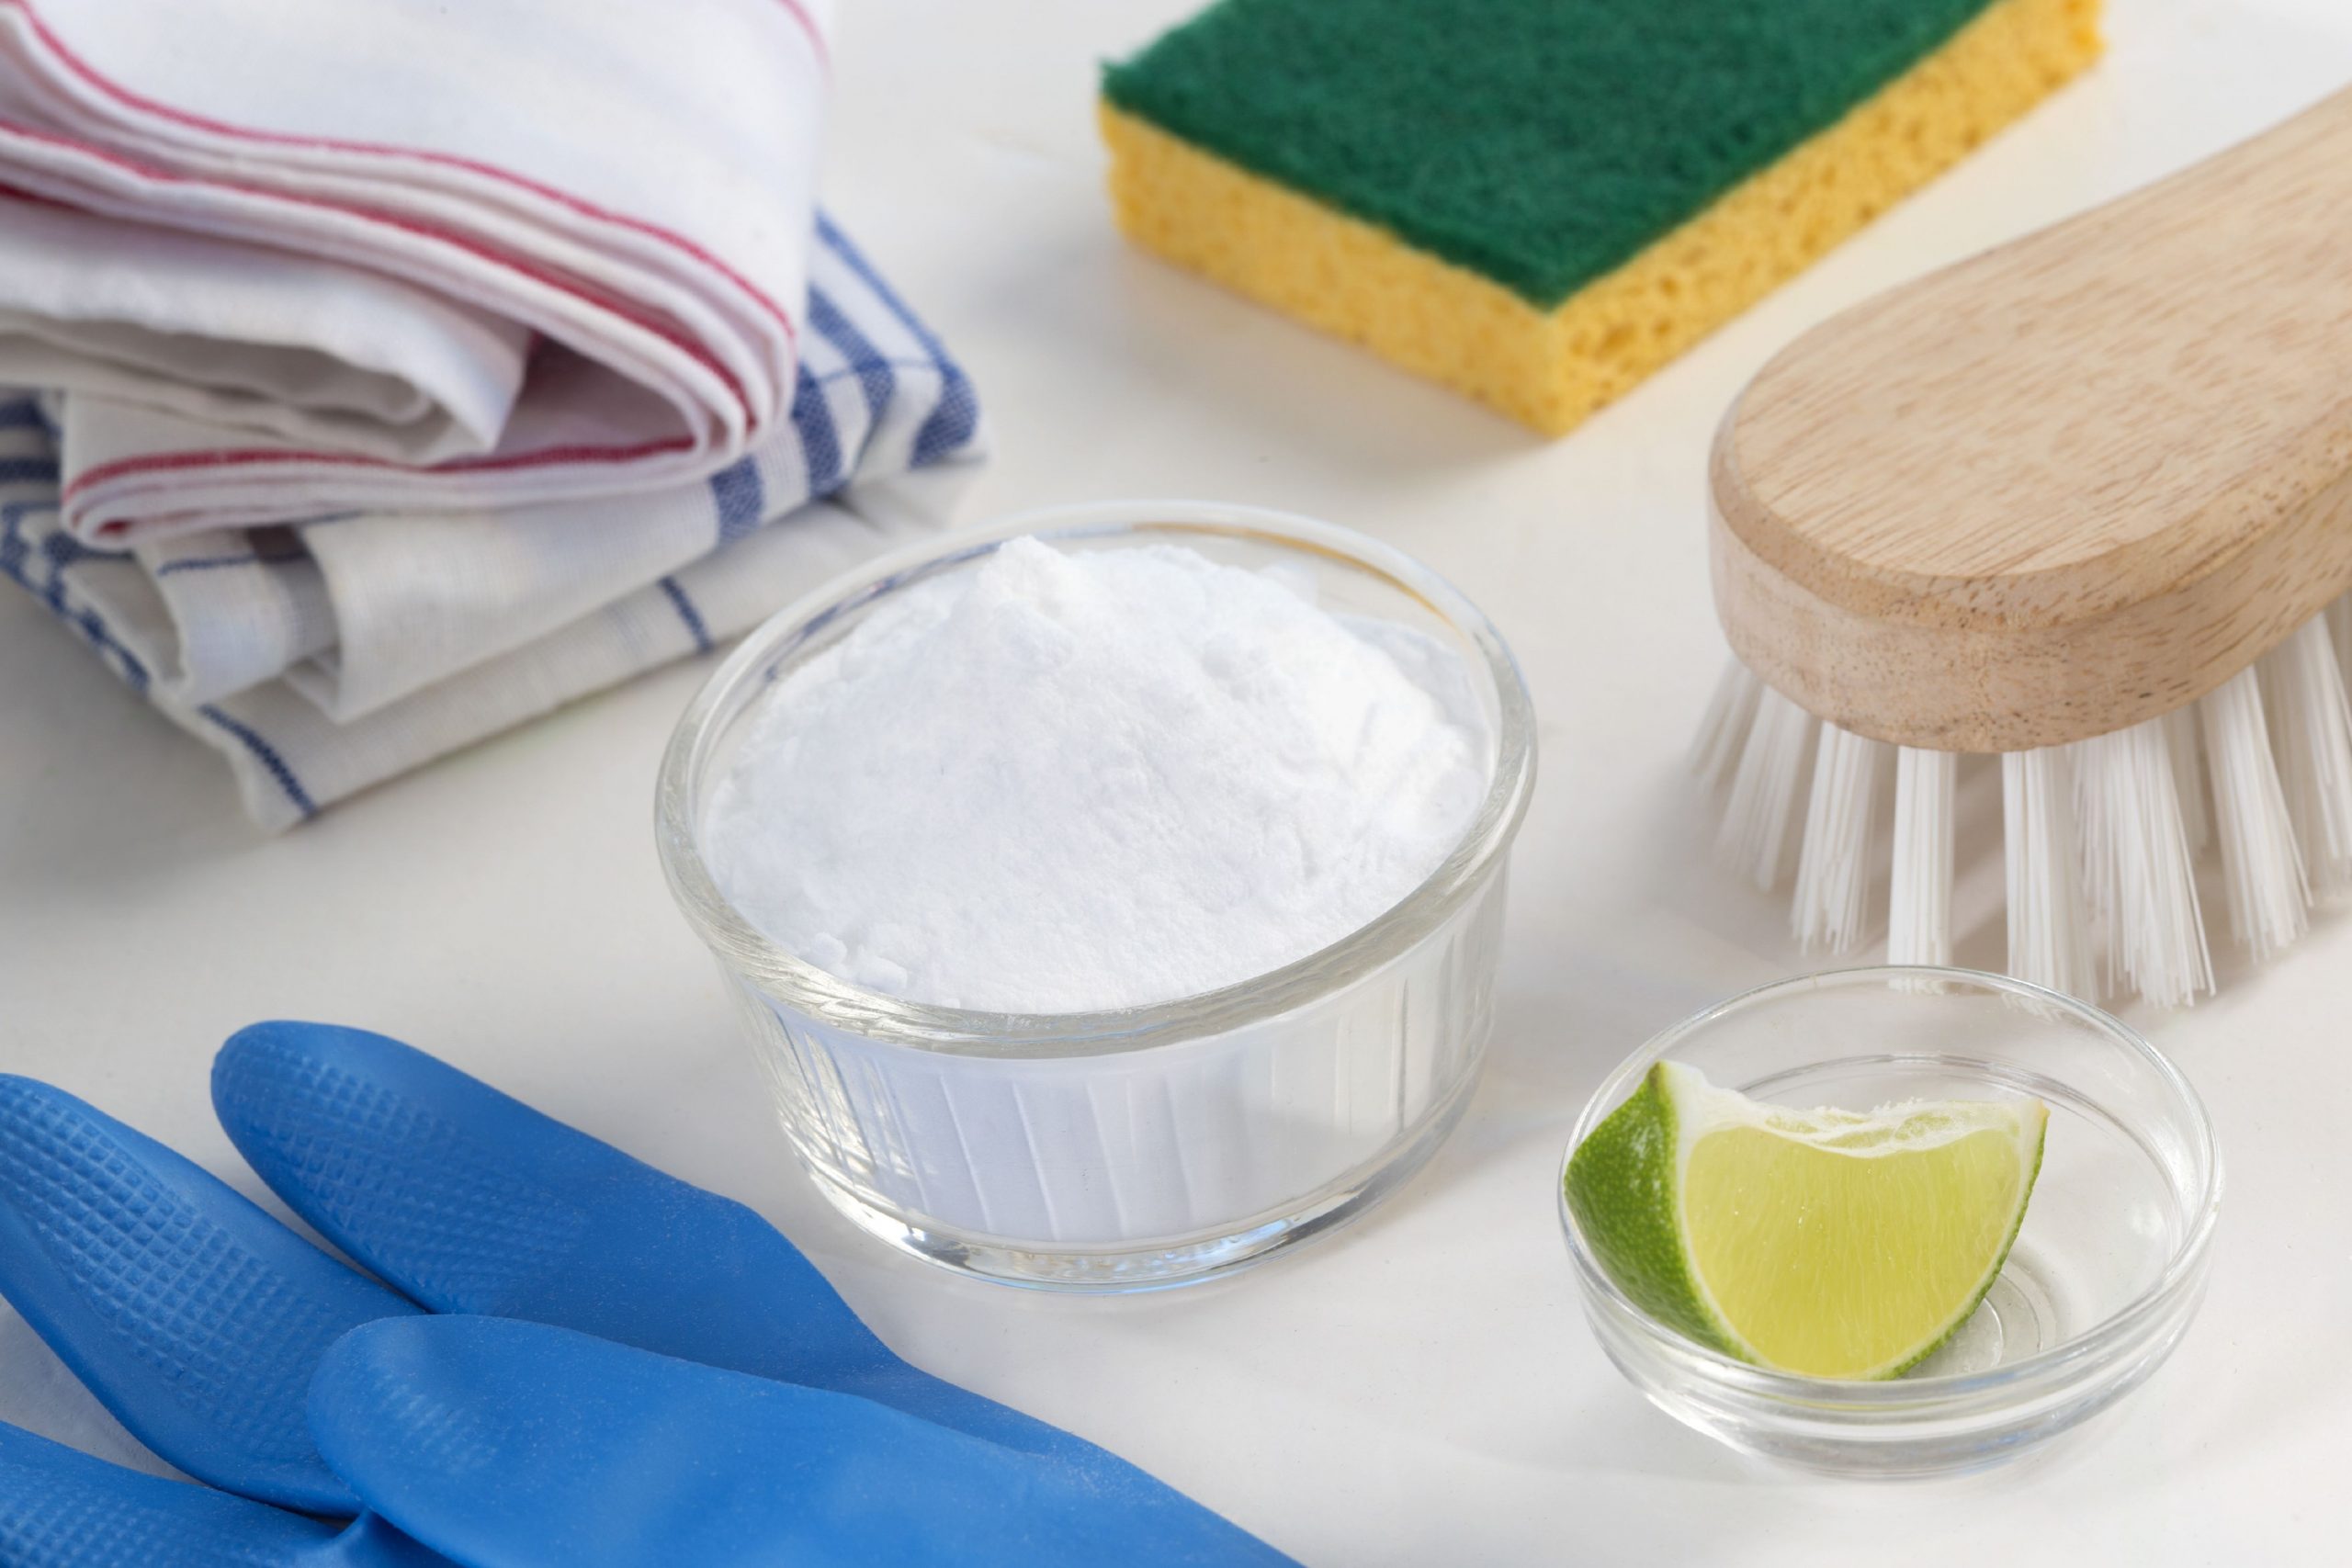 Le bicarbonate de soude est idéal pour nettoyer son réfrigérateur en profondeur